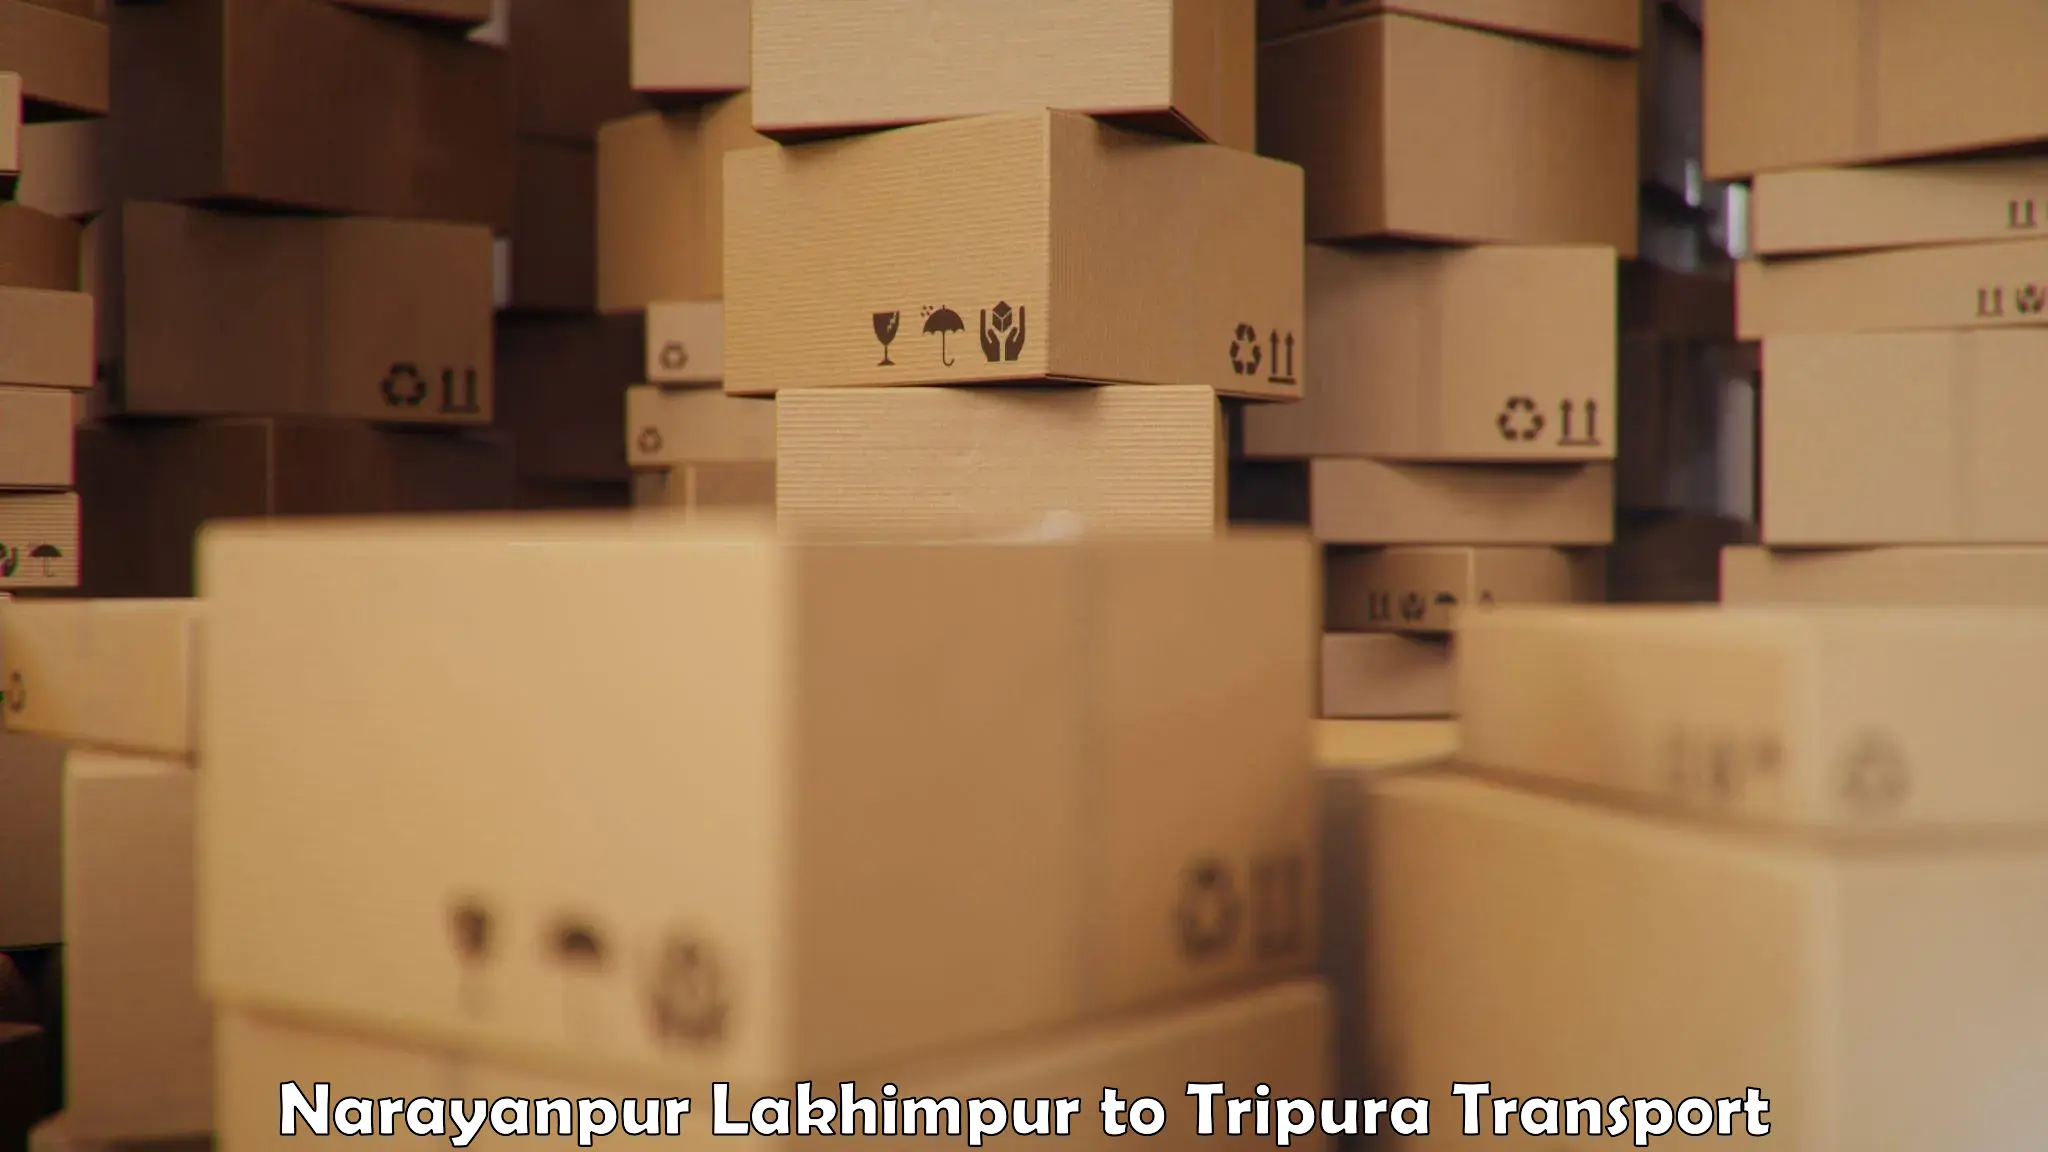 Lorry transport service Narayanpur Lakhimpur to Bishalgarh